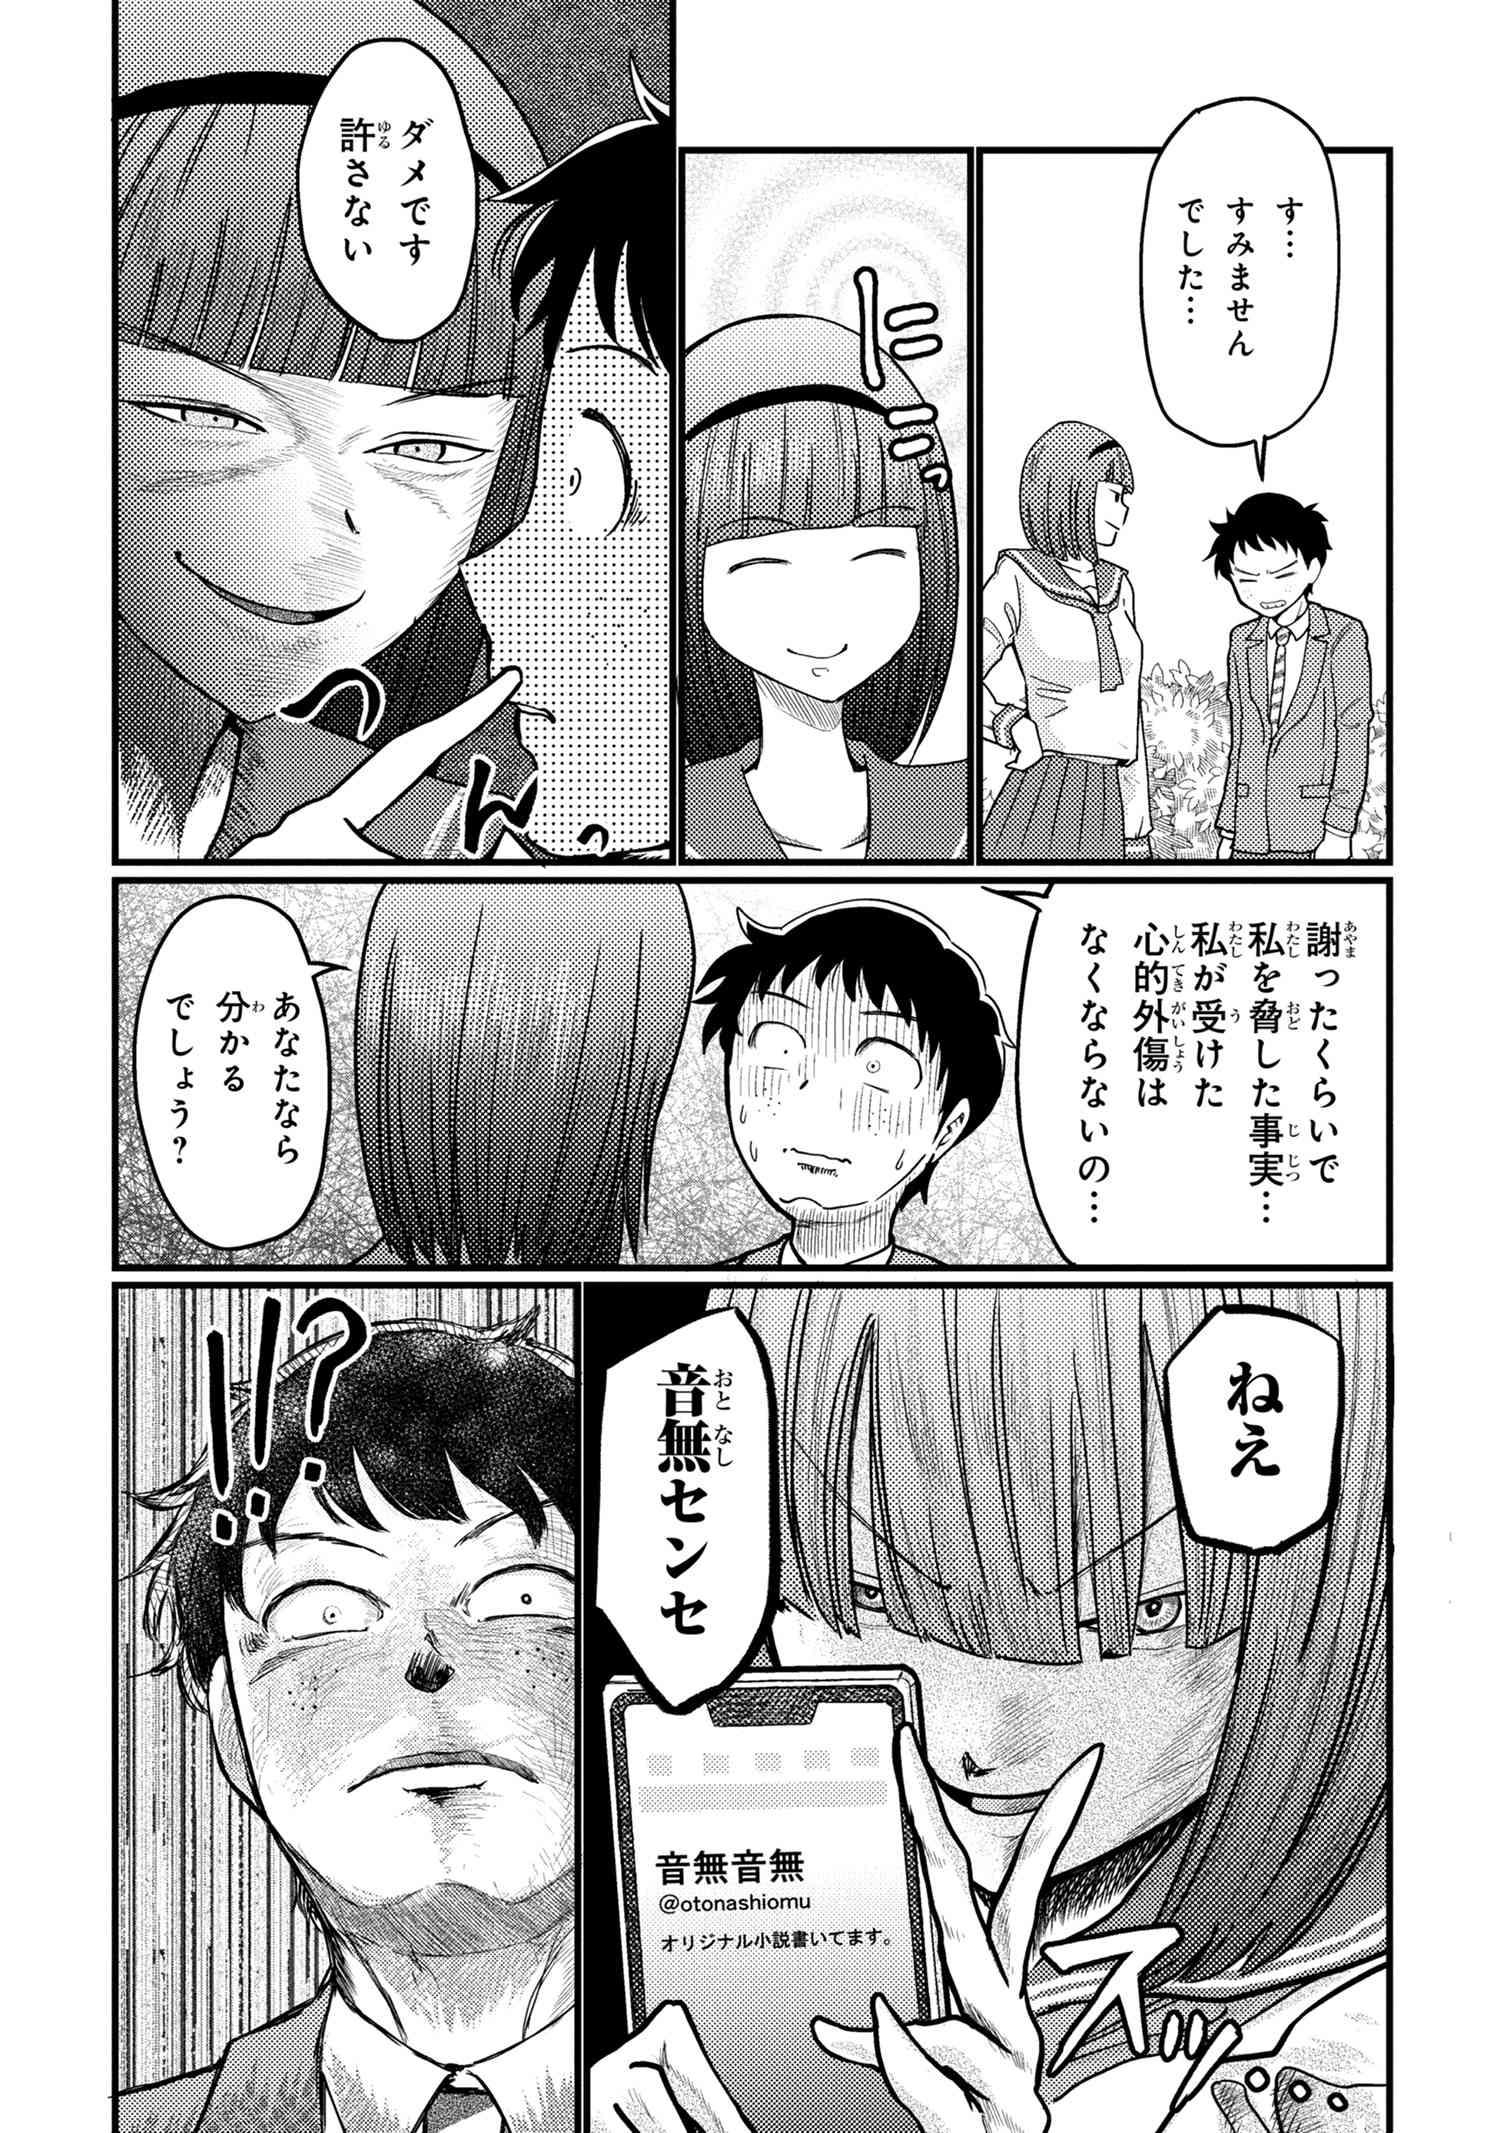 Houjou Urara no renai shousetsu o kaki nasai! - Chapter 14 - Page 5